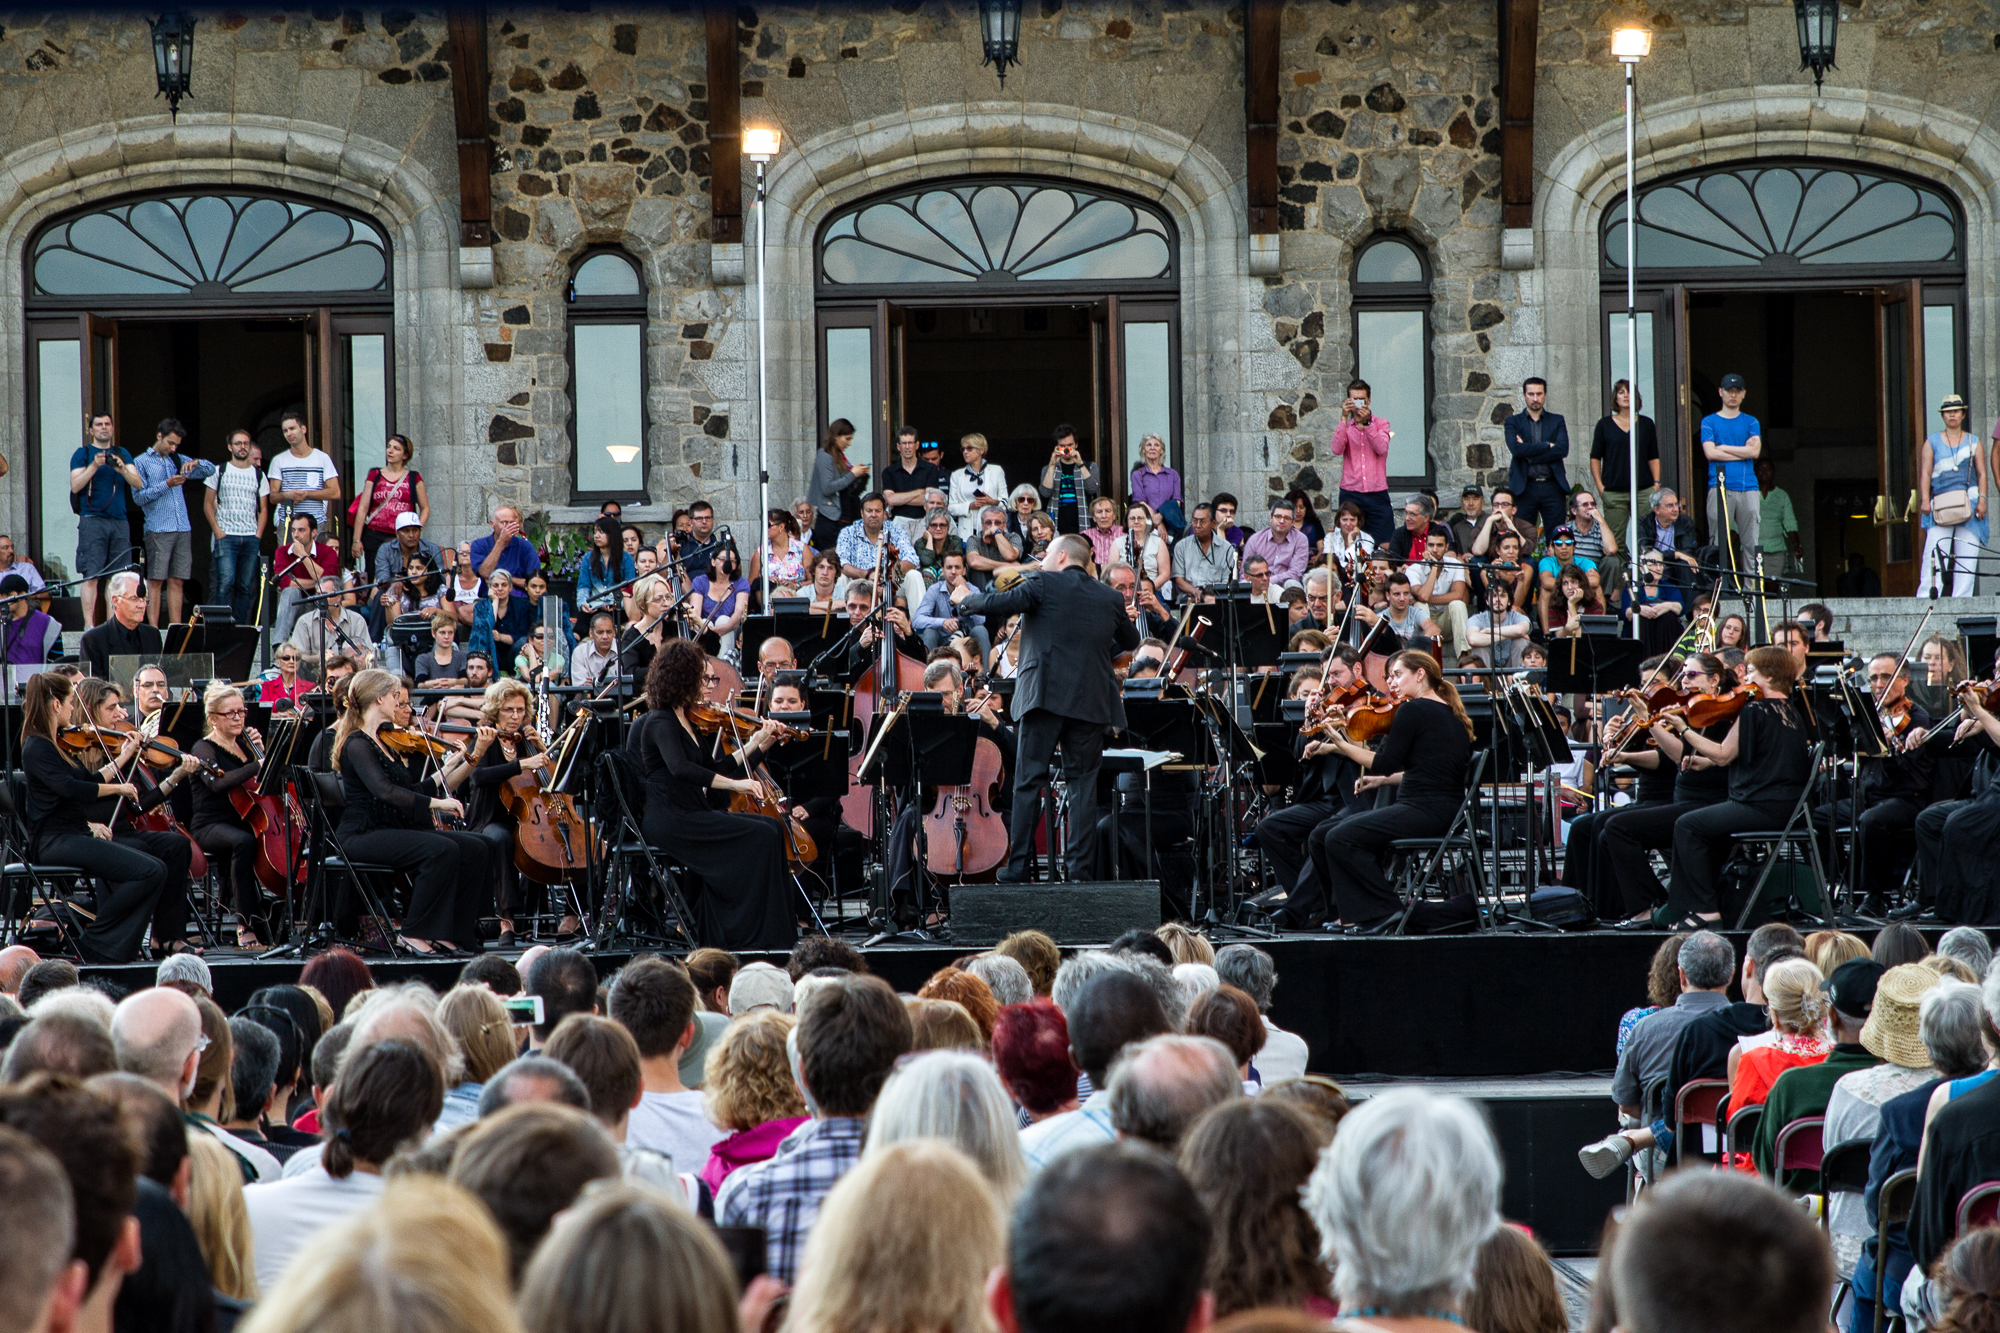 Un orchestre joue à l’extérieur, devant un édifice de pierre, et une foule assise écoute.